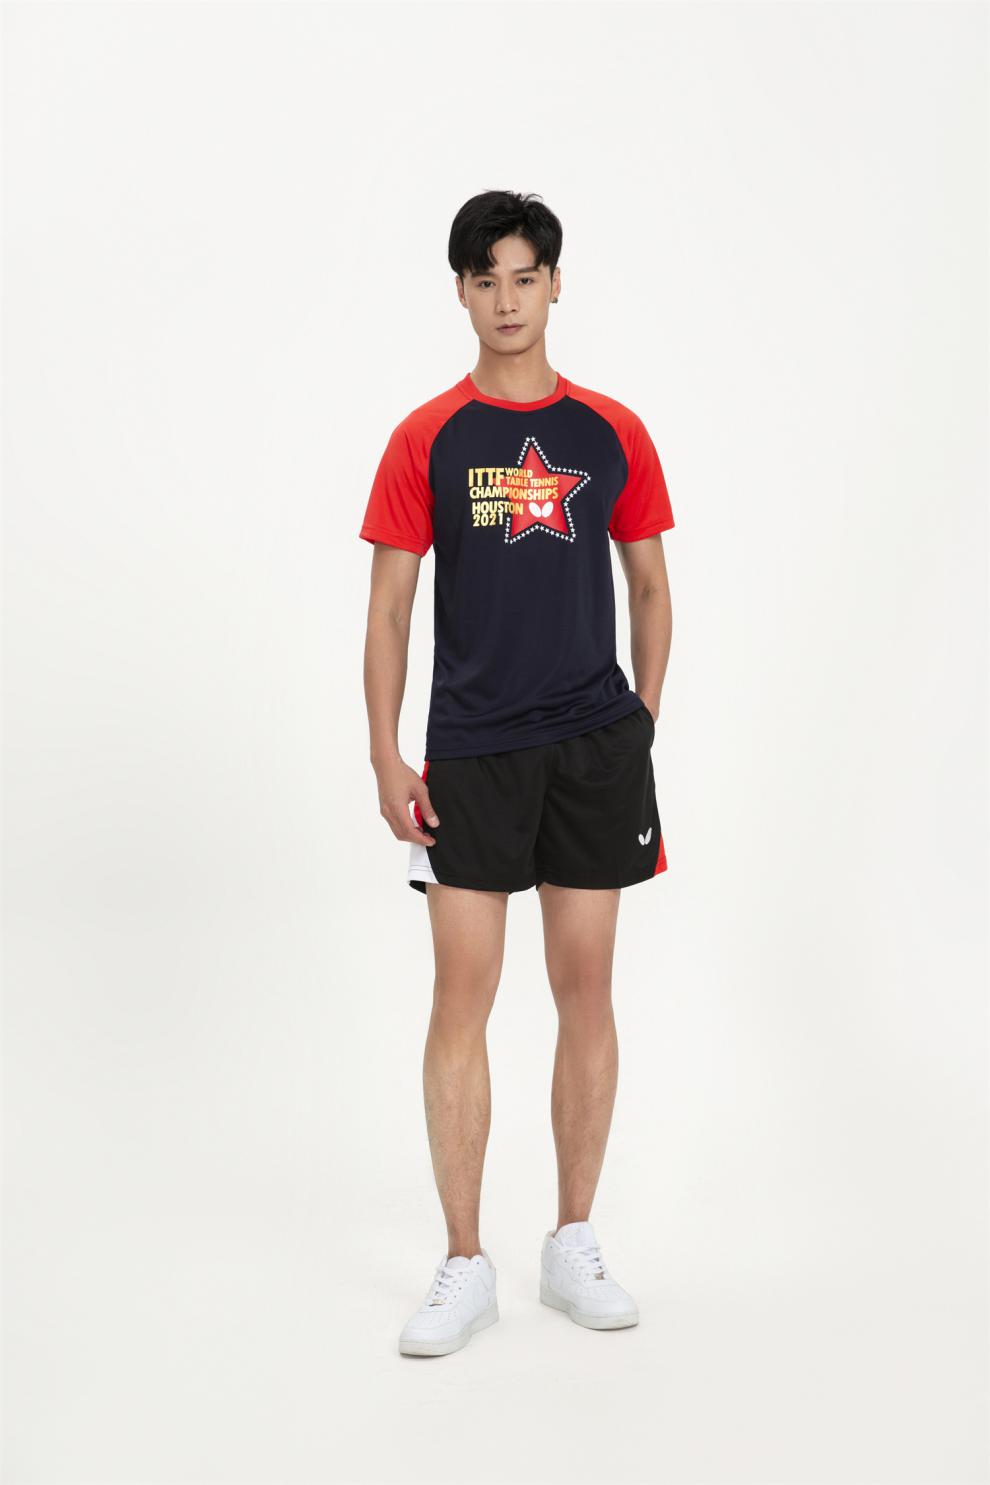 新款蝴蝶乒乓球服运动服男女款套装夏装短袖团购比赛红色上衣s